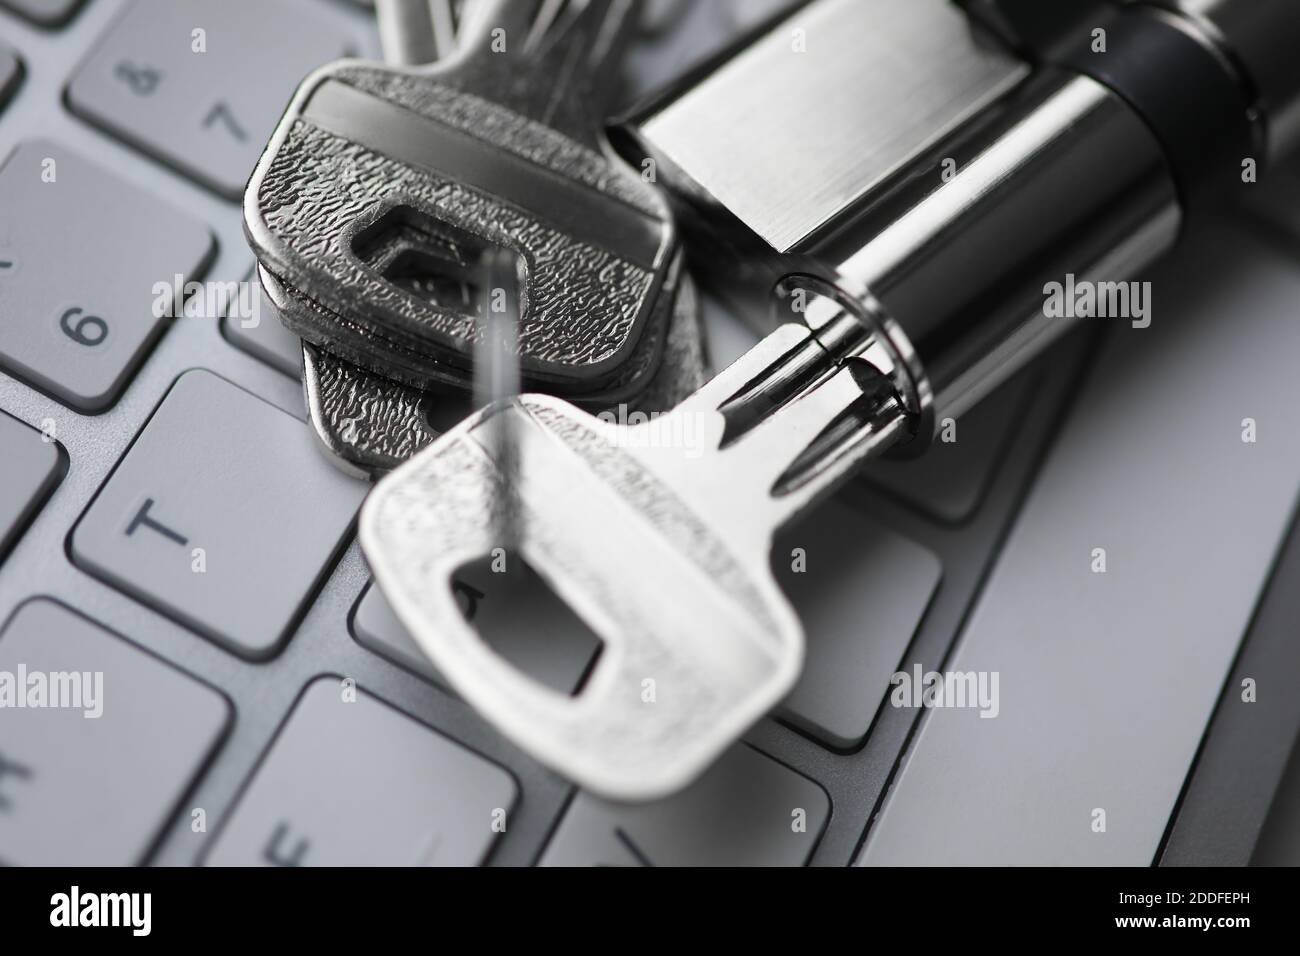 Chiave argentata con lucchetto giace sul retro del closeup della tastiera bianca. Foto Stock